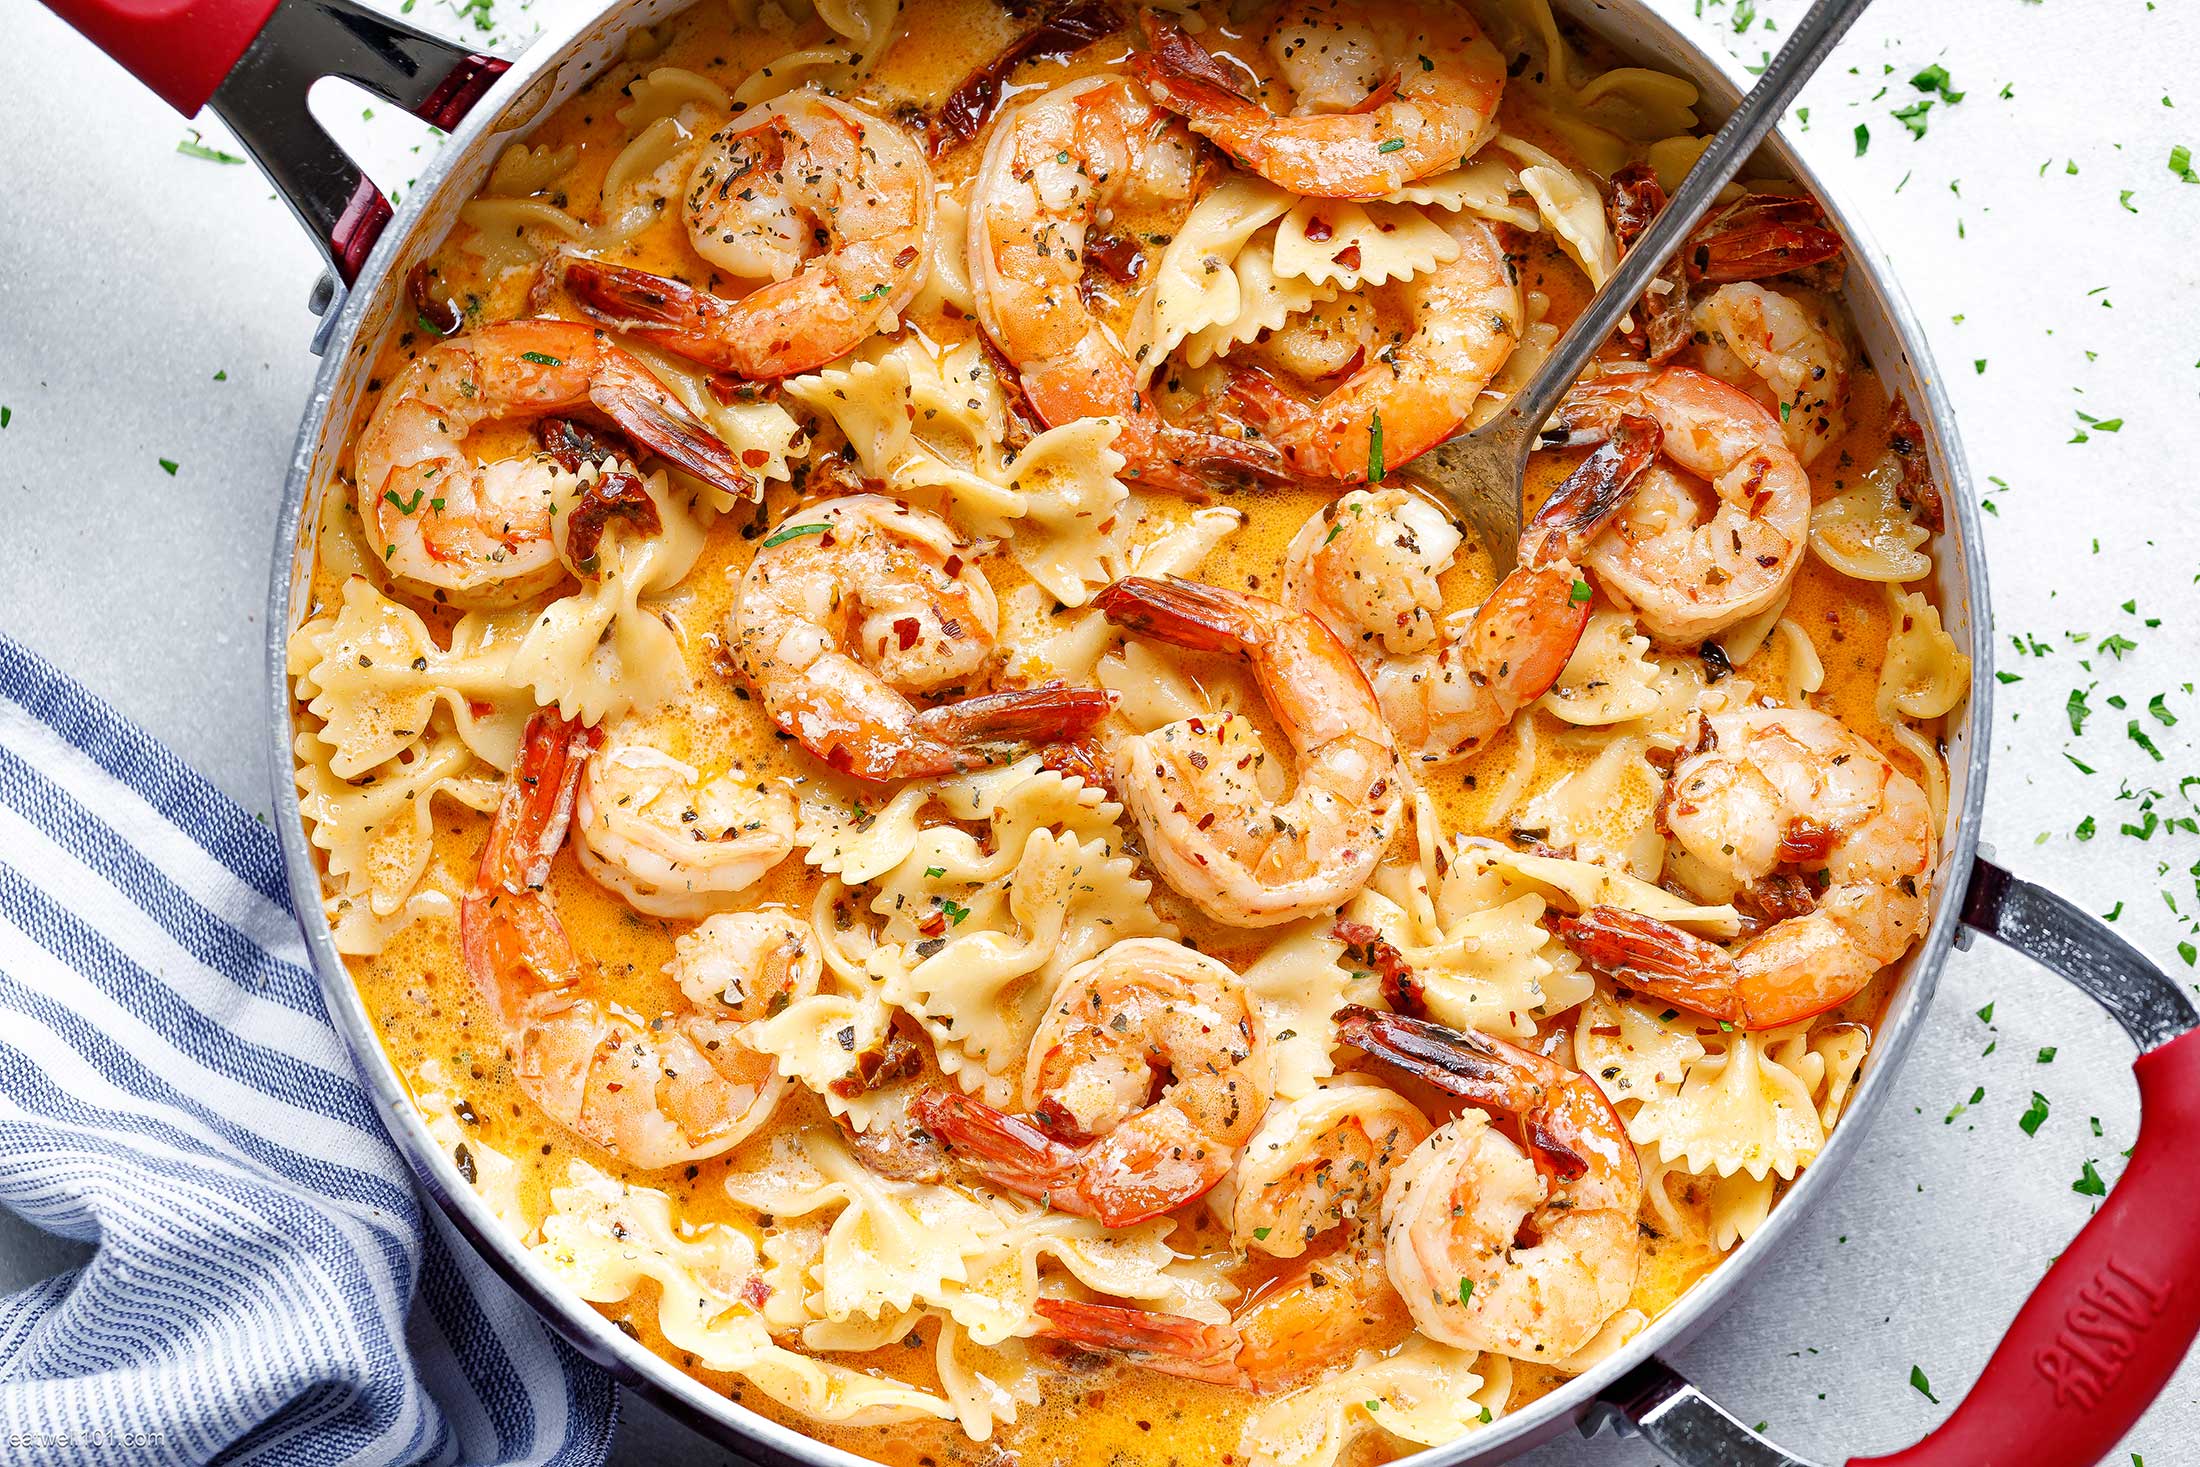 Steps to Prepare Creamy Garlic Shrimp And Pasta Recipes